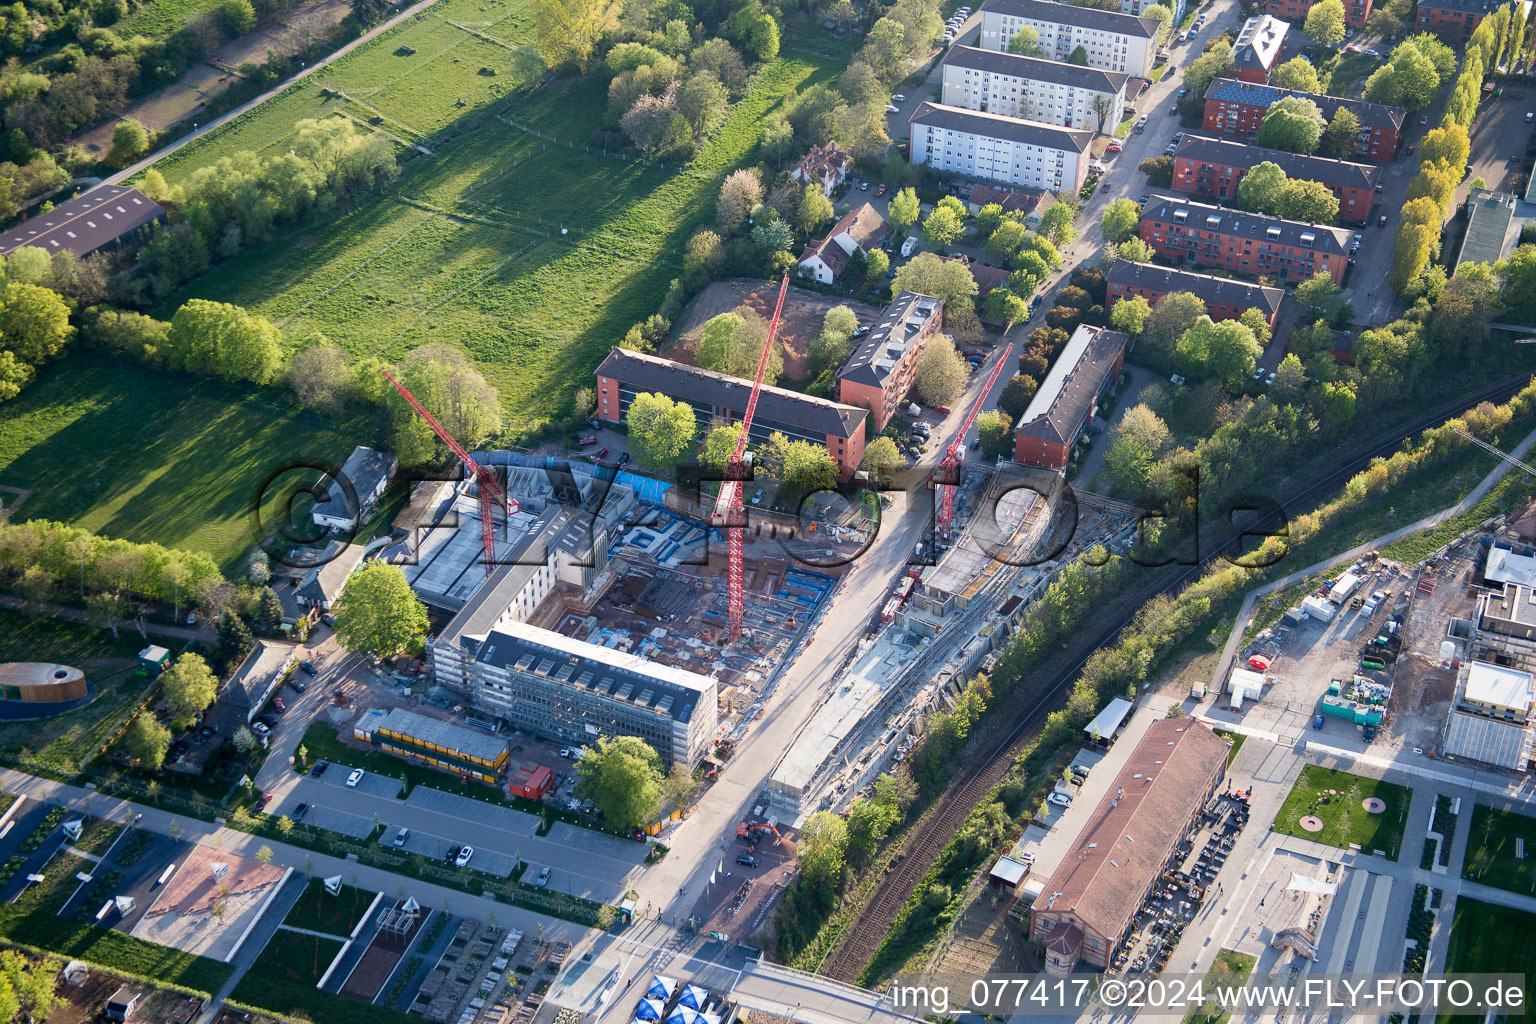 Vue aérienne de Salon national des jardins 2015 à Landau in der Pfalz dans le département Rhénanie-Palatinat, Allemagne